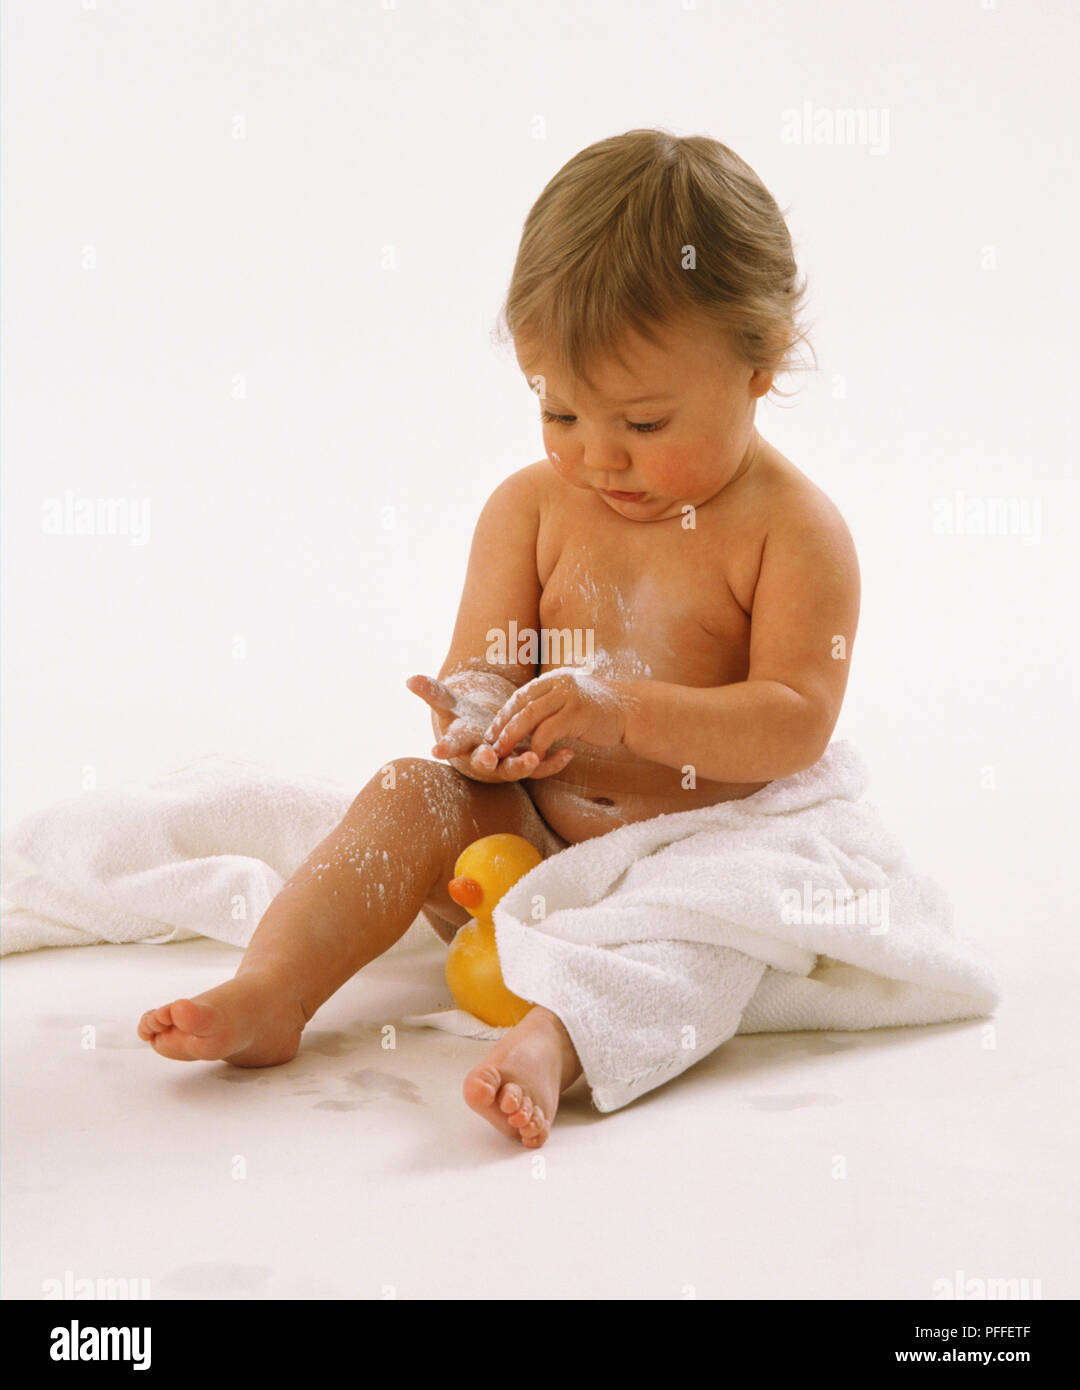 Kleinkind sitzen auf dem Boden, in weißen Handtuch